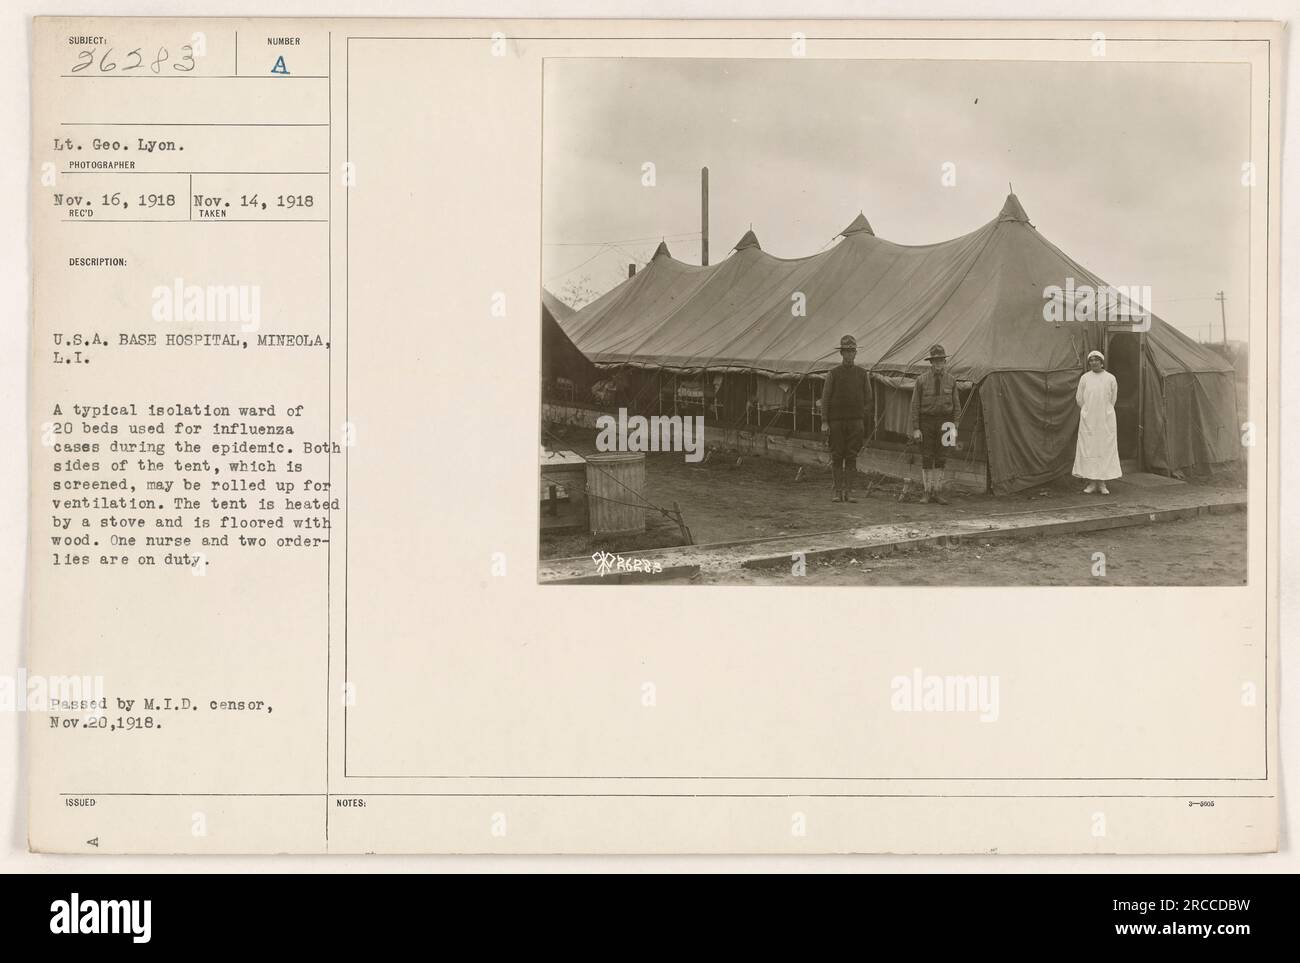 Ein US-Basiskrankenhaus in Mineola, L.I. mit einer typischen Isolierstation mit 20 Betten, die für Grippefälle während der Epidemie verwendet wurden. Das Zelt ist abgeschirmt und bietet Belüftung, wenn beide Seiten aufgerollt sind. Es ist mit einem Herd beheizt und hat einen Holzboden. Eine Krankenschwester und zwei Pfleger sind im Dienst. Am 20. November 1918 vom M.I.D.-Zensor übergeben. Stockfoto